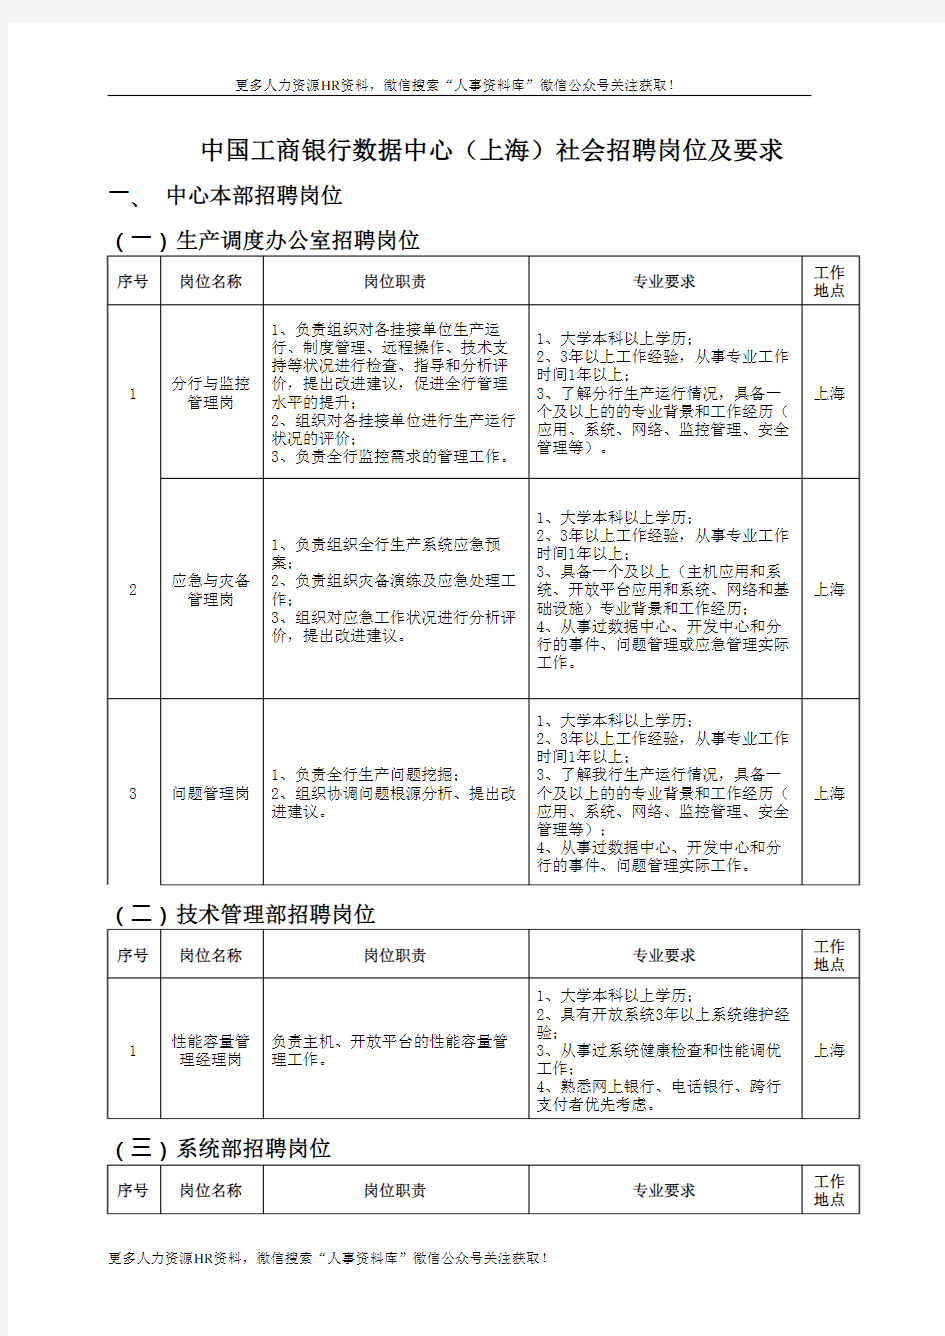 社招-中国工商银行数据中心(上海)社会招聘岗位及要求